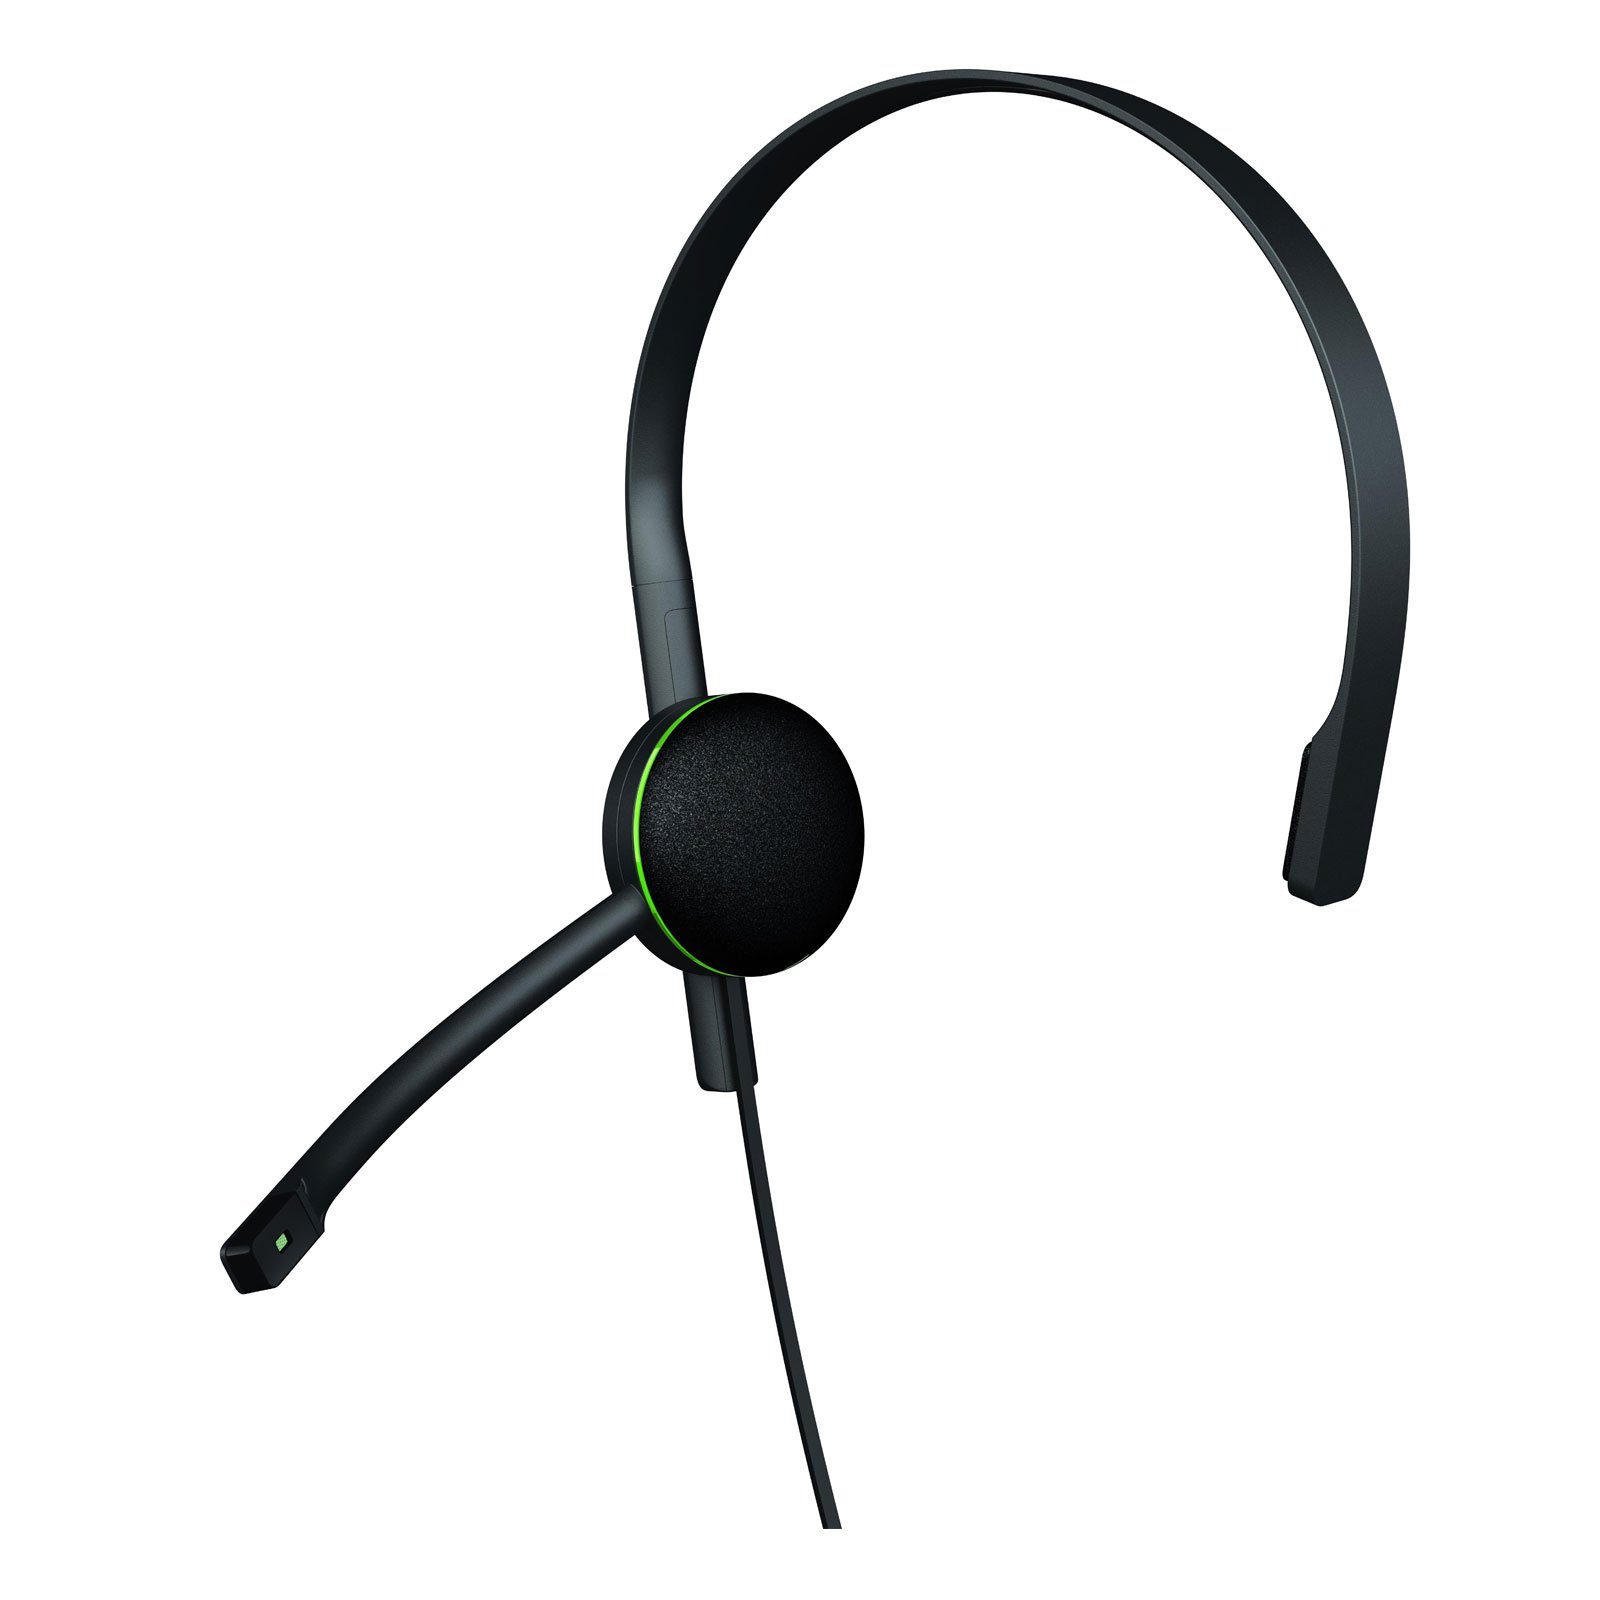 Microsoft »Xbox One Chat Headset« Headset (Gamesound hören, Voicechatten)  online kaufen | OTTO